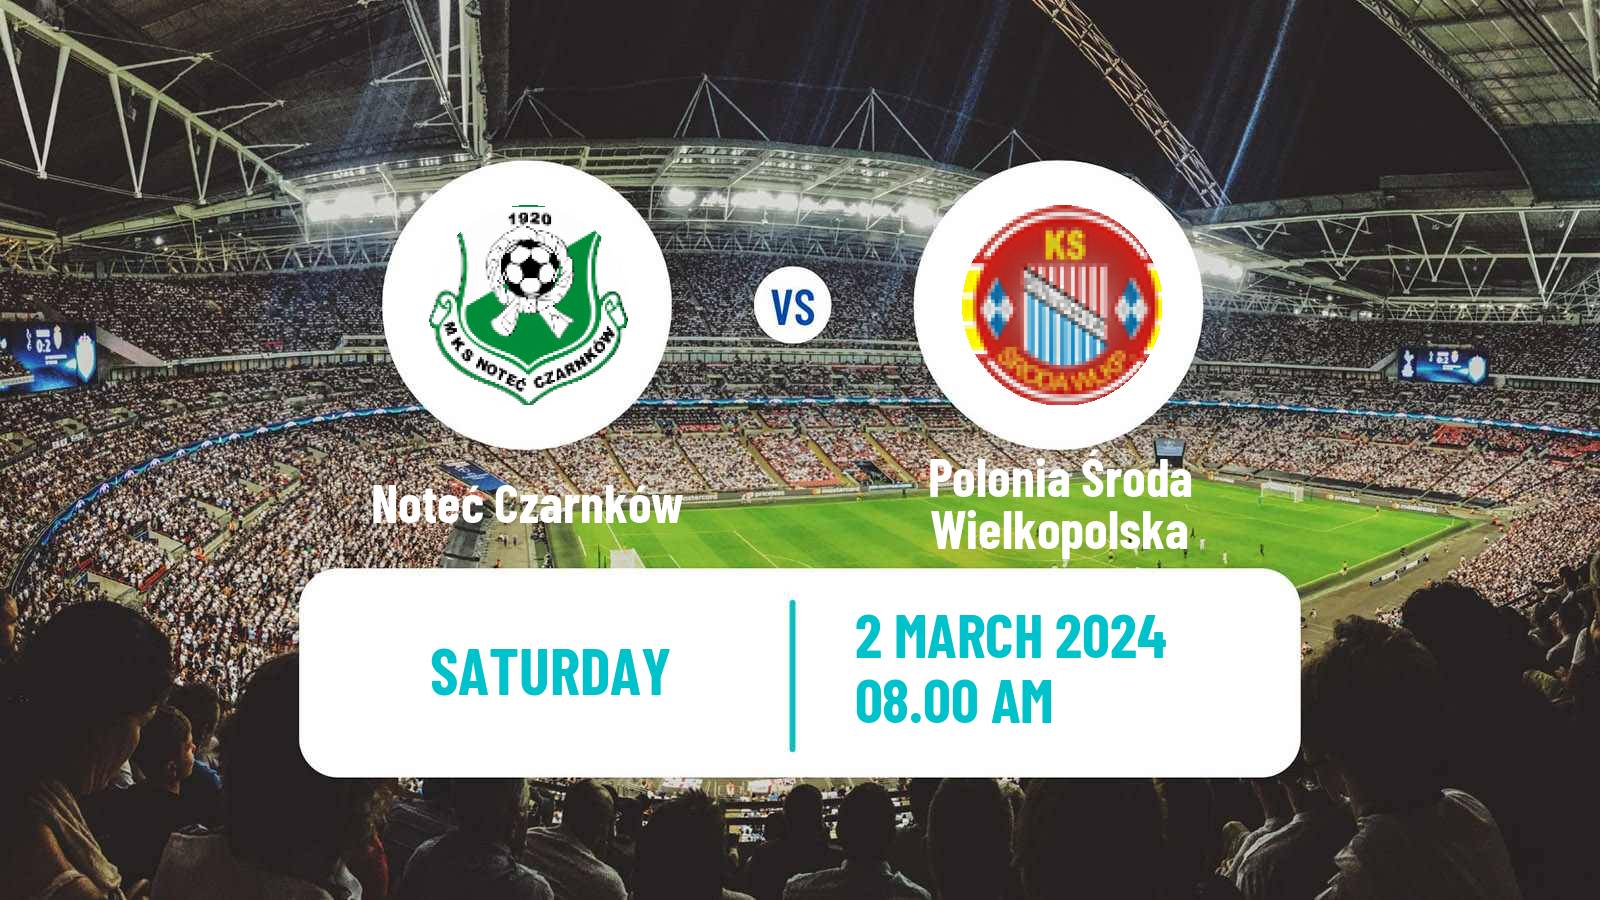 Soccer Polish Division 3 - Group II Noteć Czarnków - Polonia Środa Wielkopolska